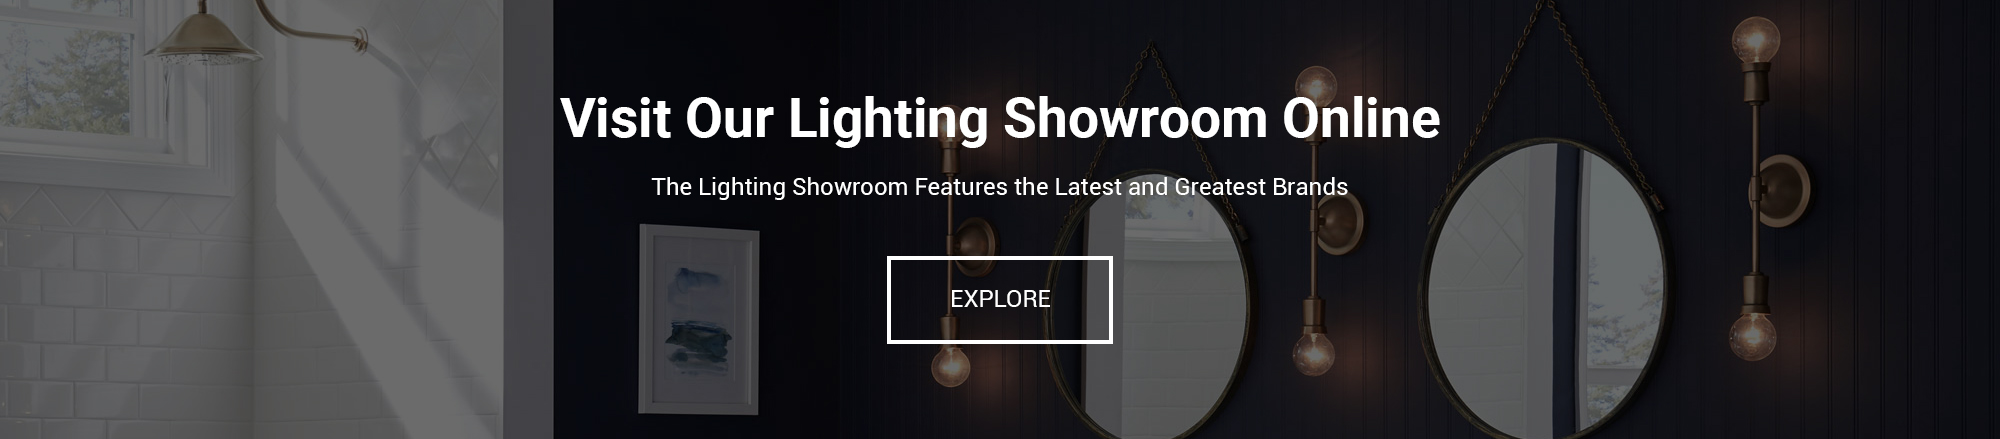 showroom-lighting-website-banner